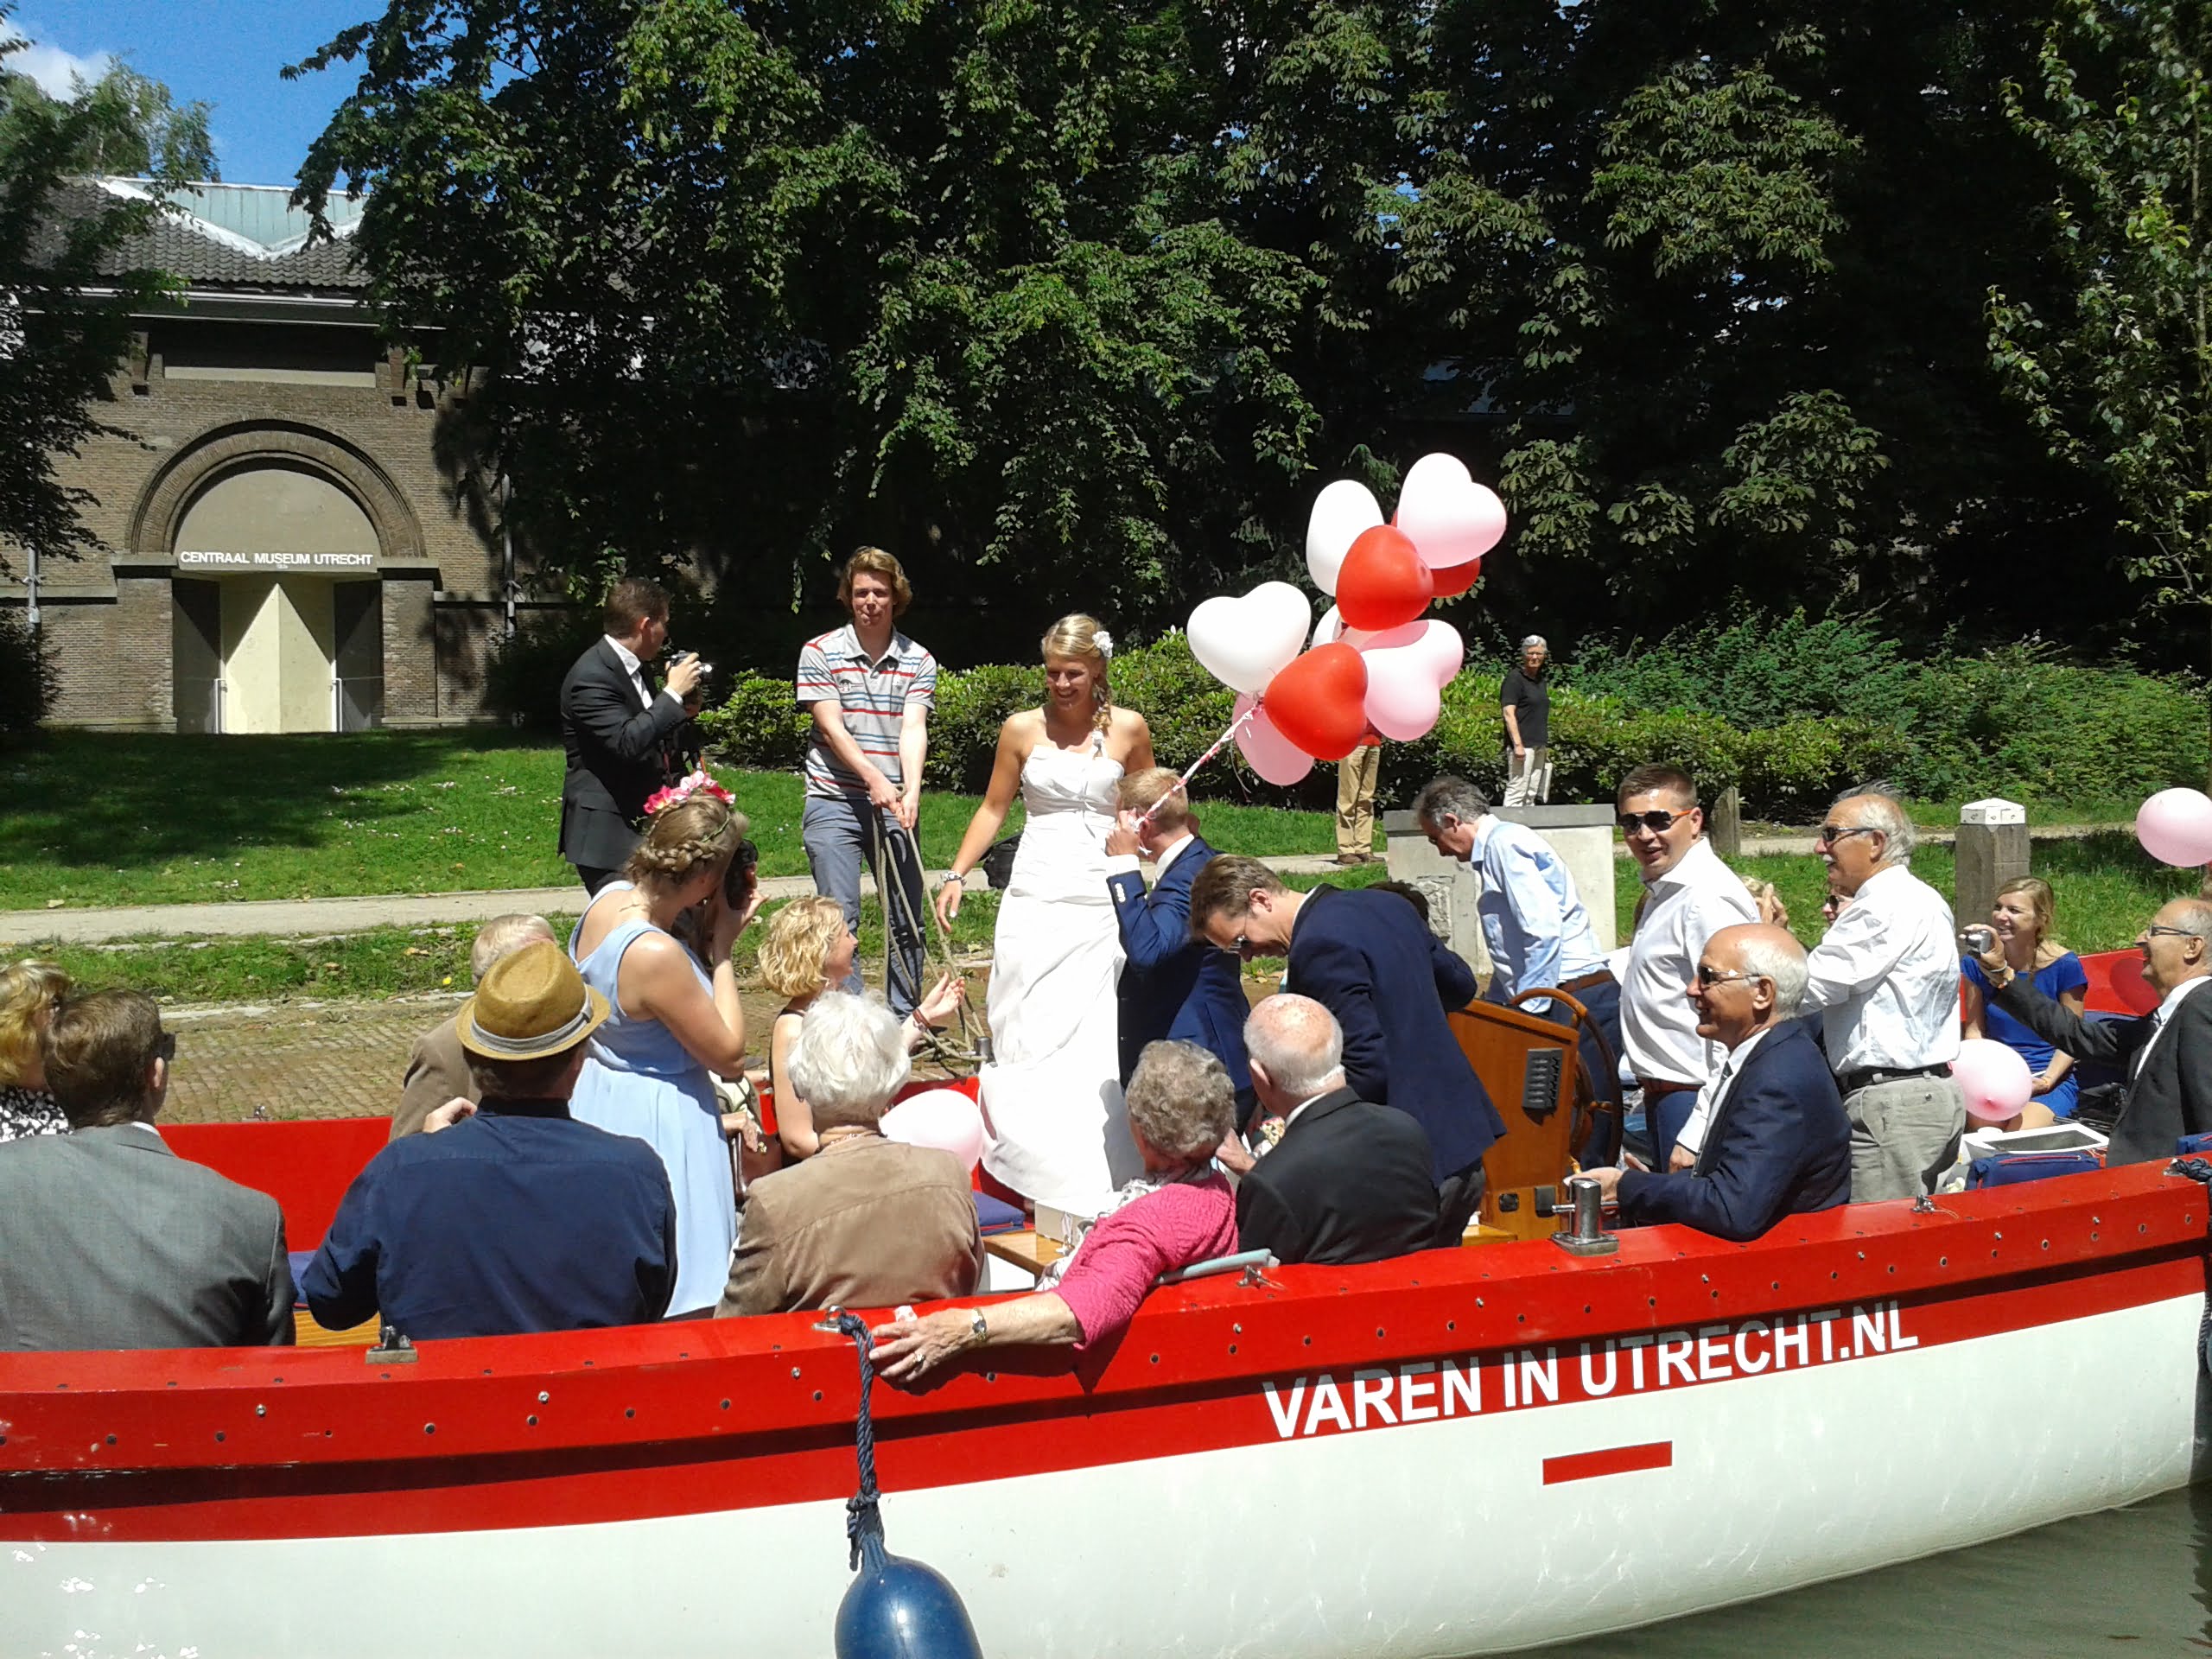 Bruidsvaart Utrecht